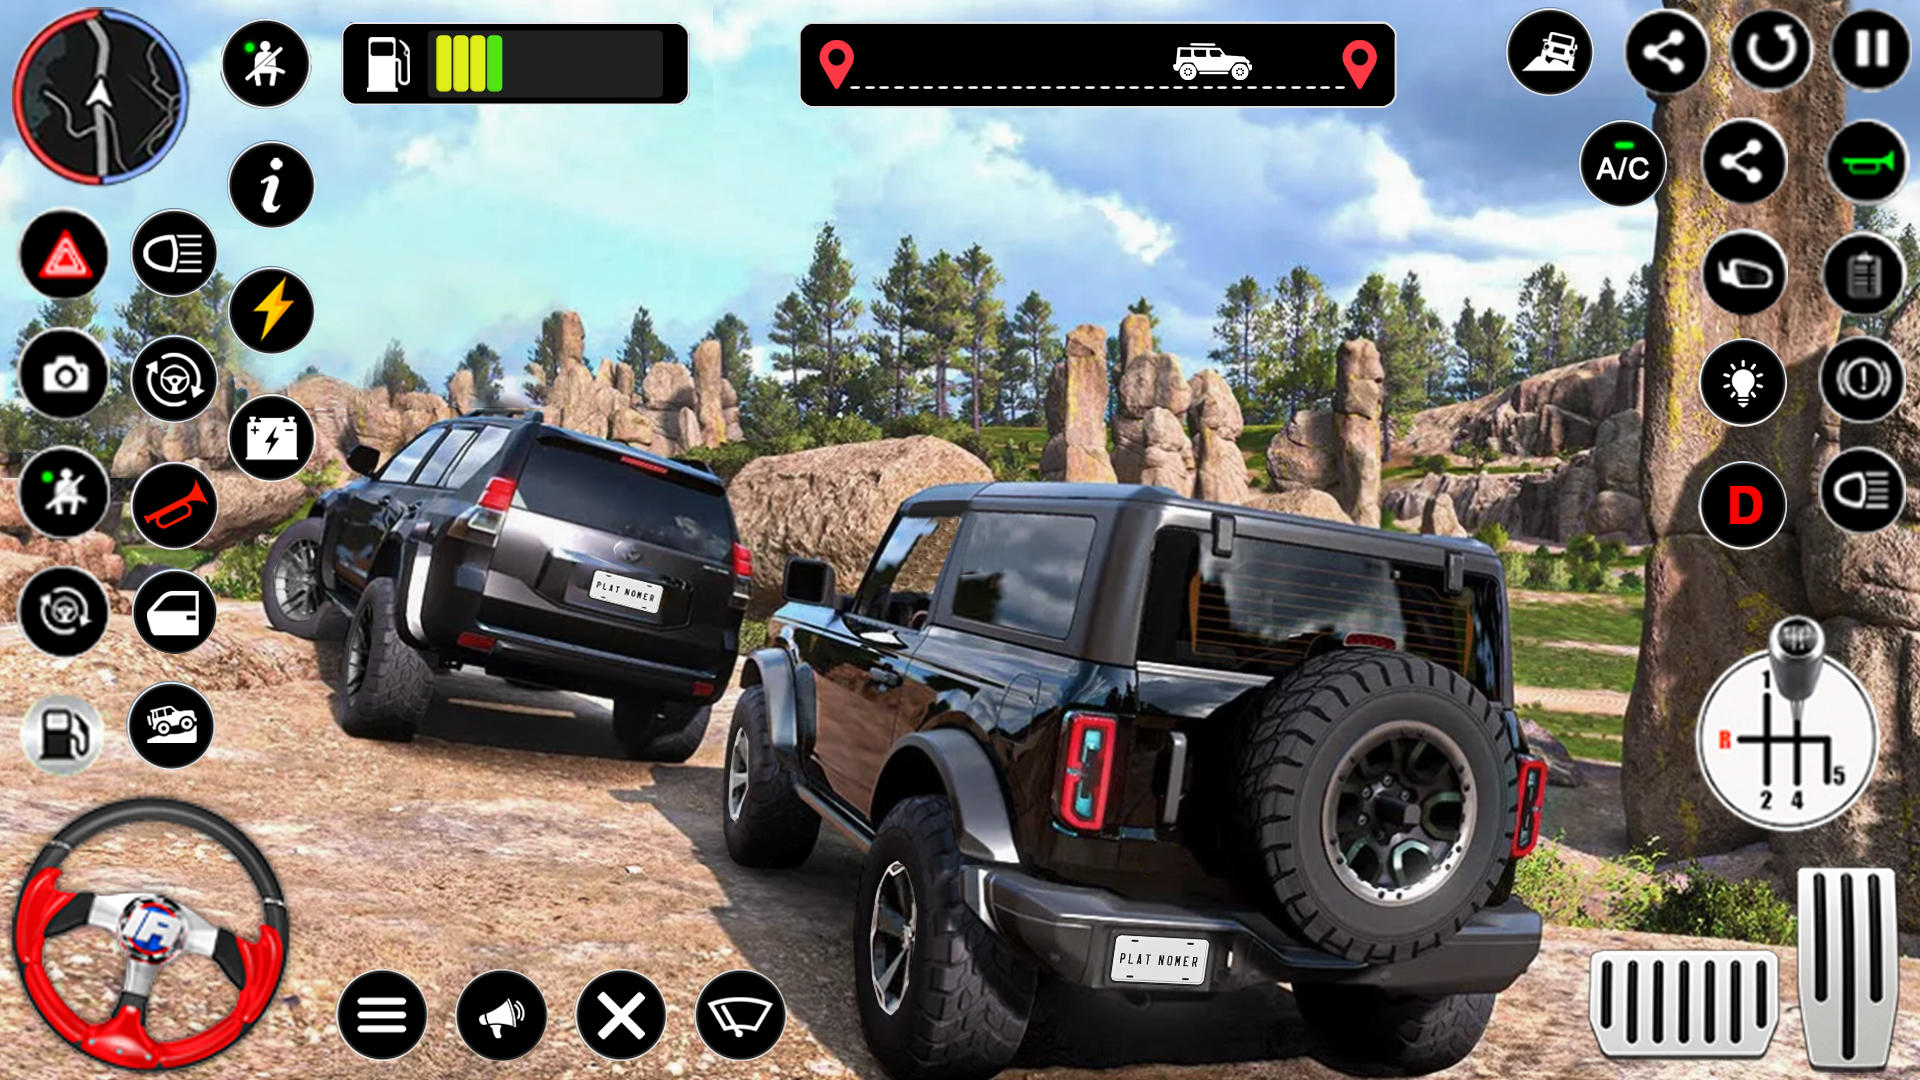 Screenshot 1 of เกมขับรถจี๊ปออฟโร้ดธาร์ 1.4